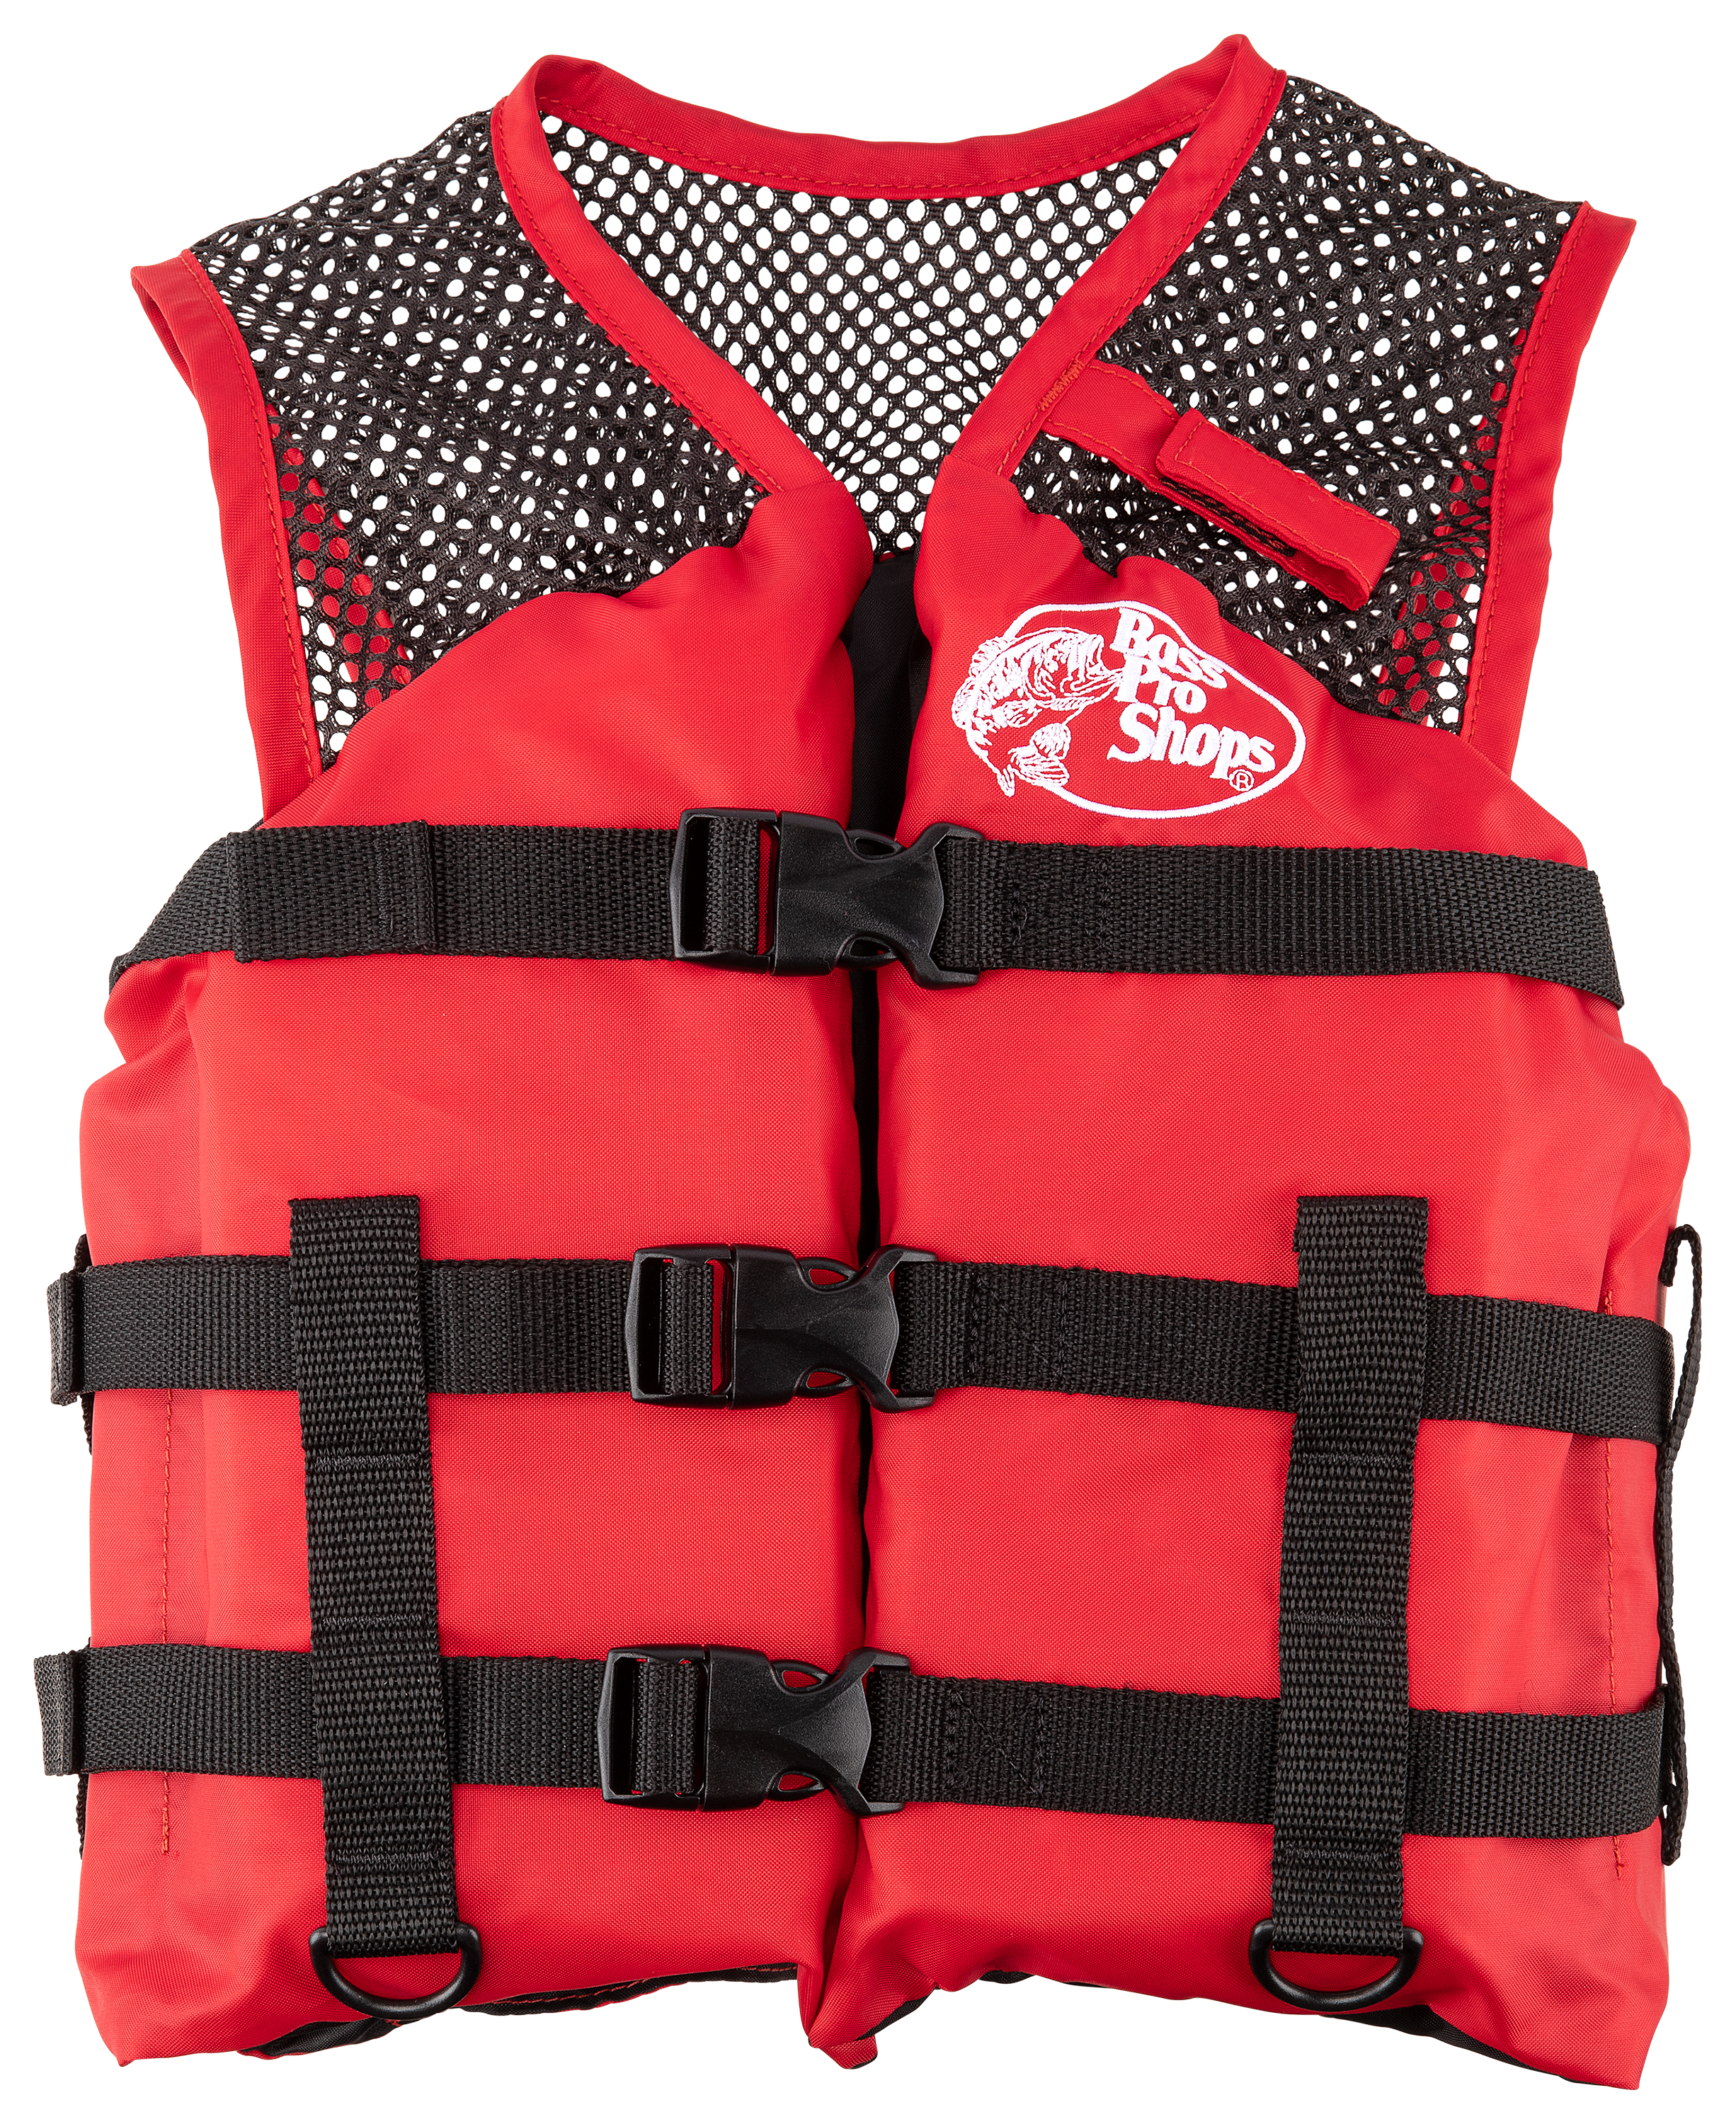 Bass Pro Shops Basic Mesh Fishing Life Vest for Kids - Red